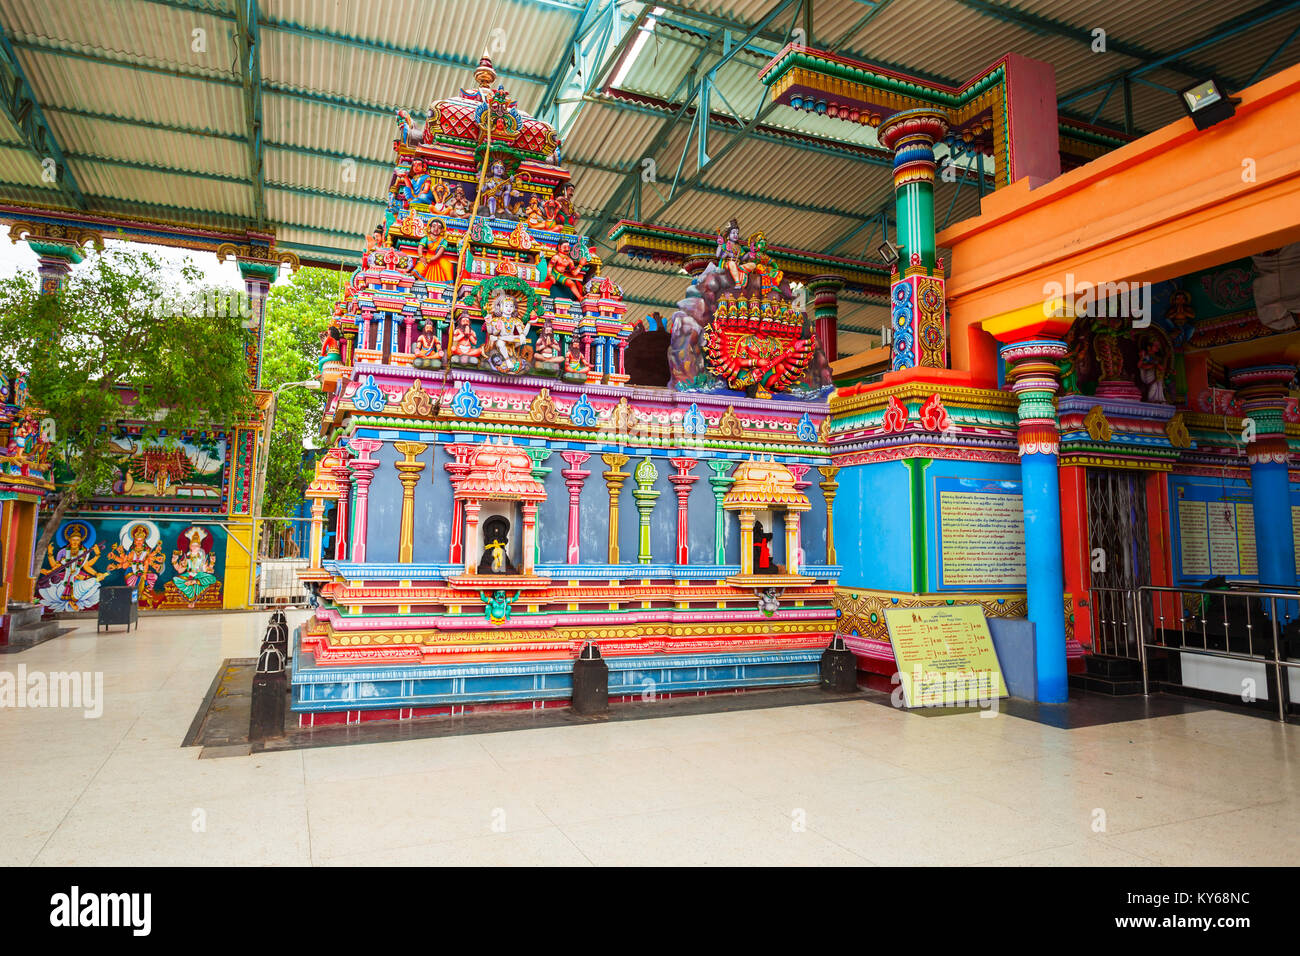 TRINCOMALEE, SRI LANKA - 14. FEBRUAR 2017: koneswaram Tempel oder Dakshinakailasha ist eine klassische mittelalterlichen Hindu Tempel zu Lord Shiva in Trin gewidmet Stockfoto